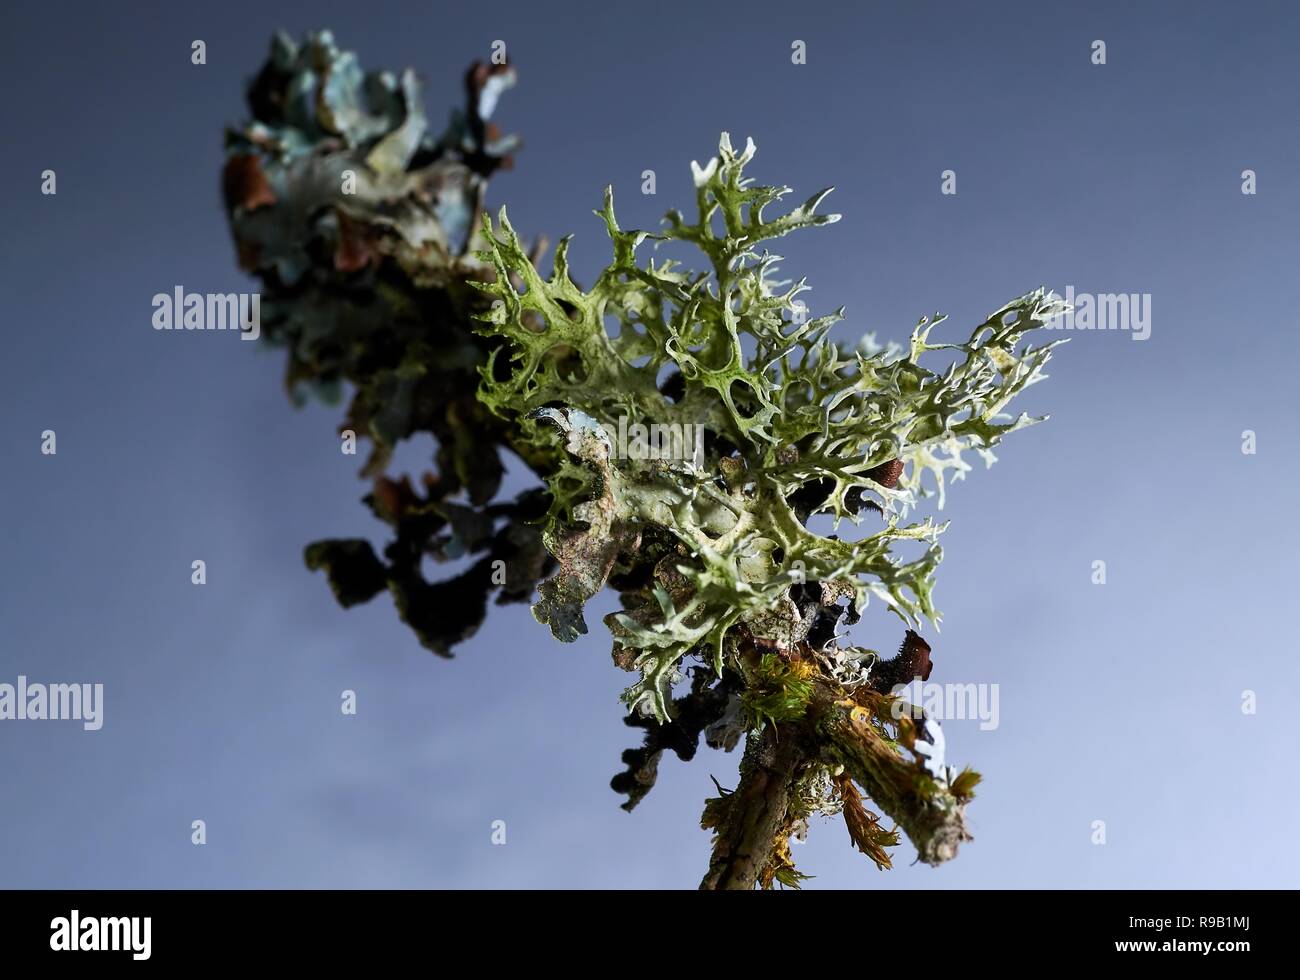 Thallus species of lichen Xanthoria parietina, Parmelia sulcata, Physcia tenella on a branch close-up, in the autumn Stock Photo